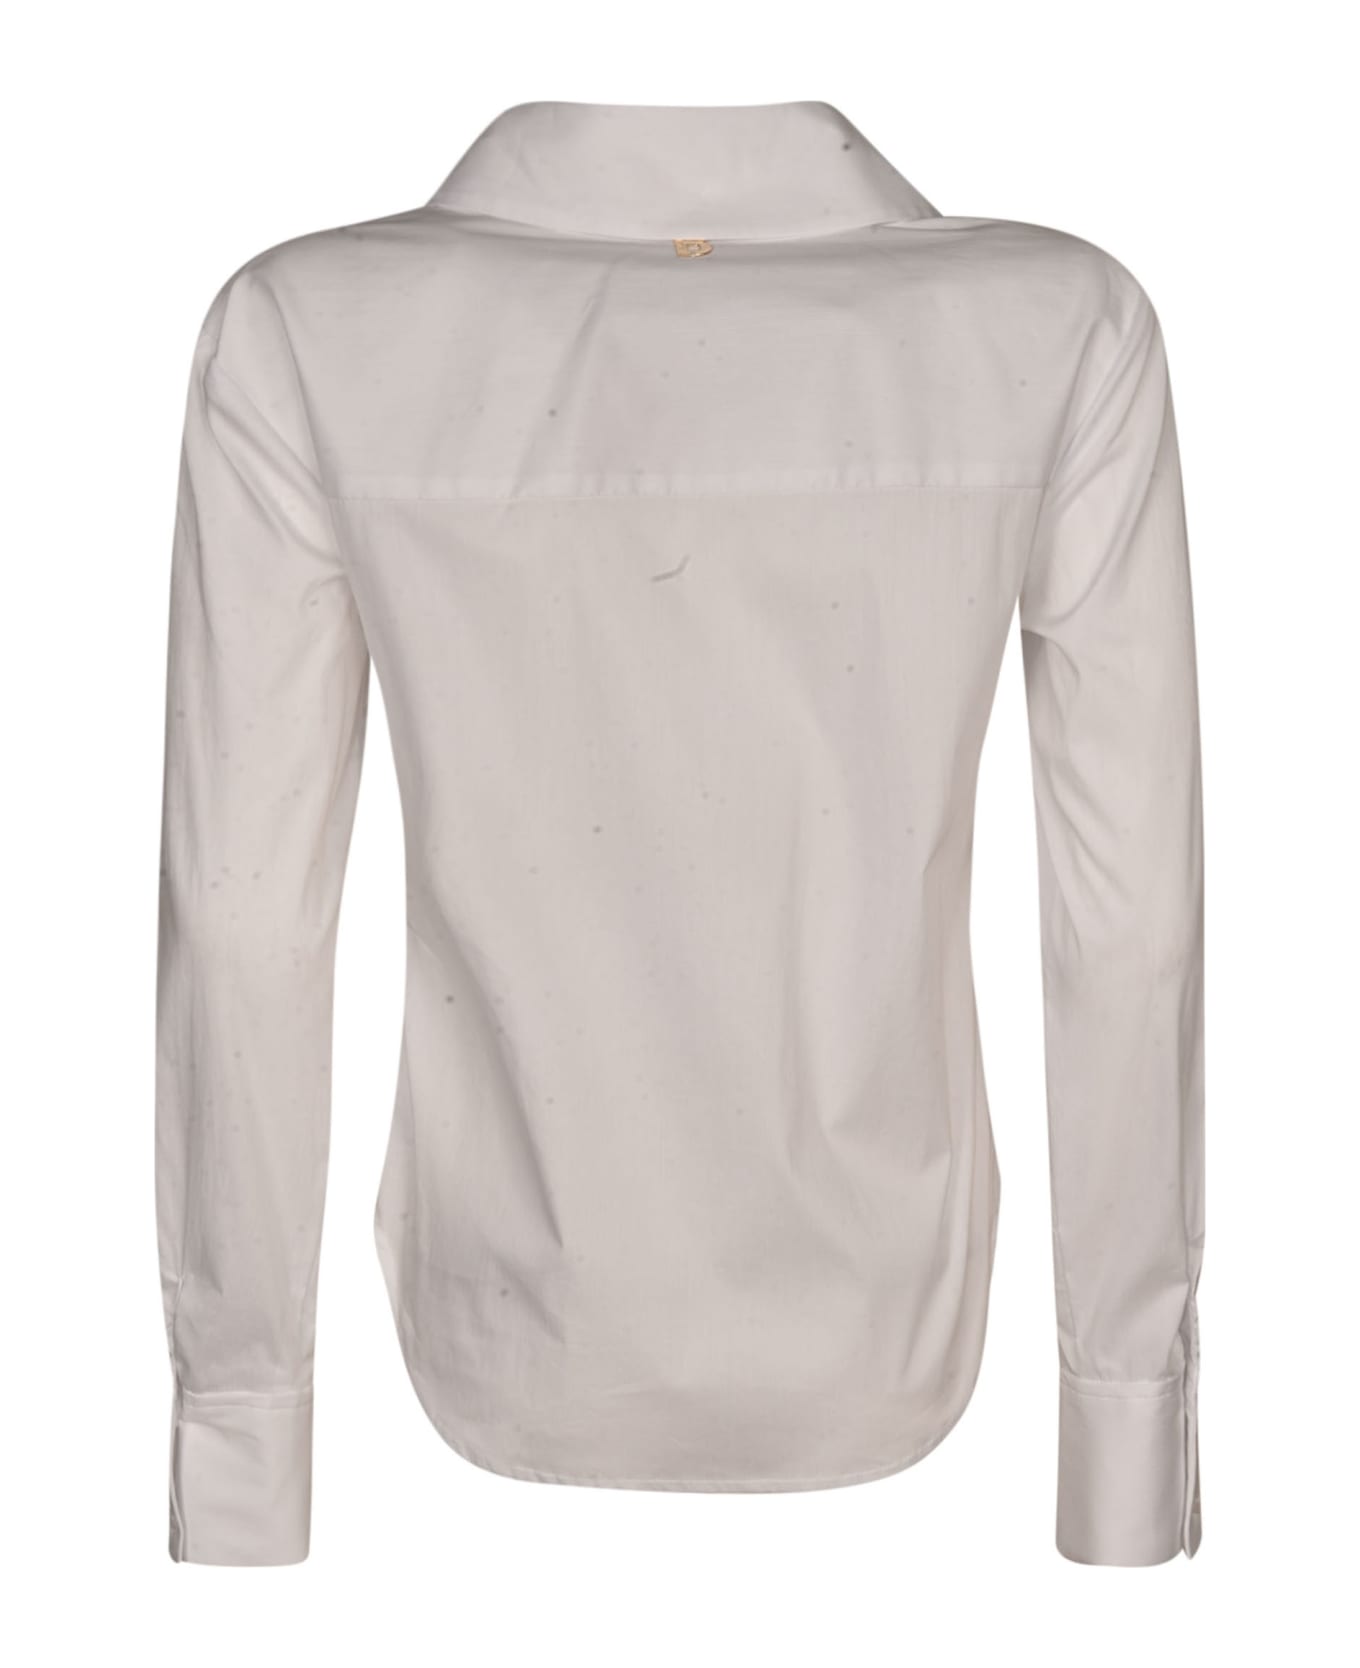 Blugirl Rose Applique Round Hem Shirt - White シャツ